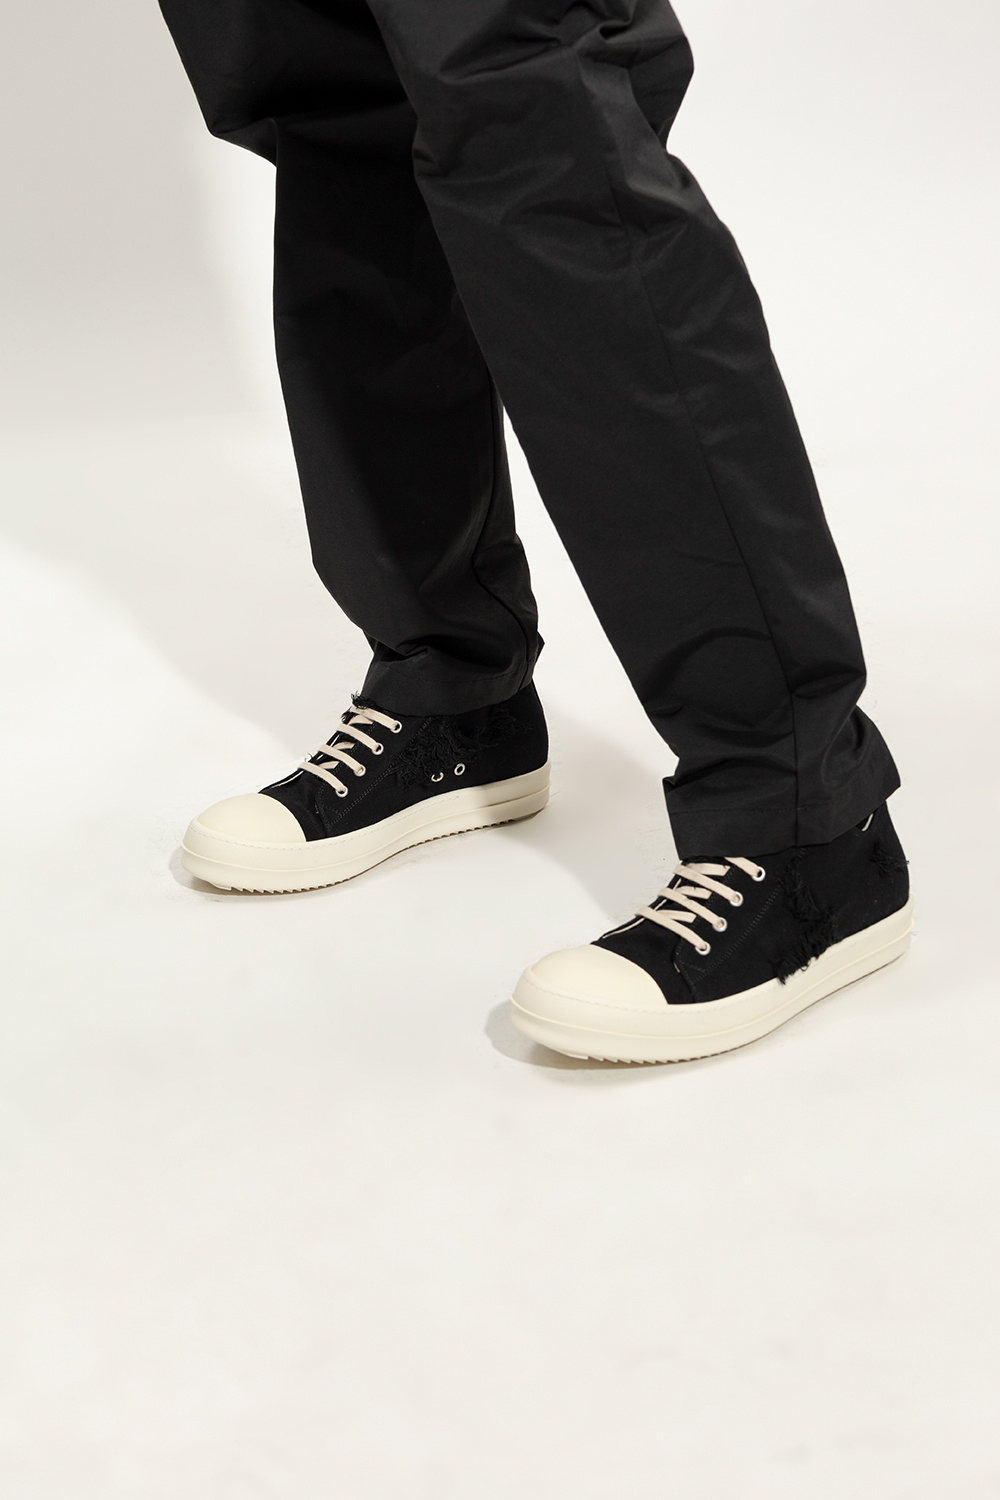 ADIDAS KIDS ZX 700 SNEAKERS ‘Low Sneaks’ sneakers